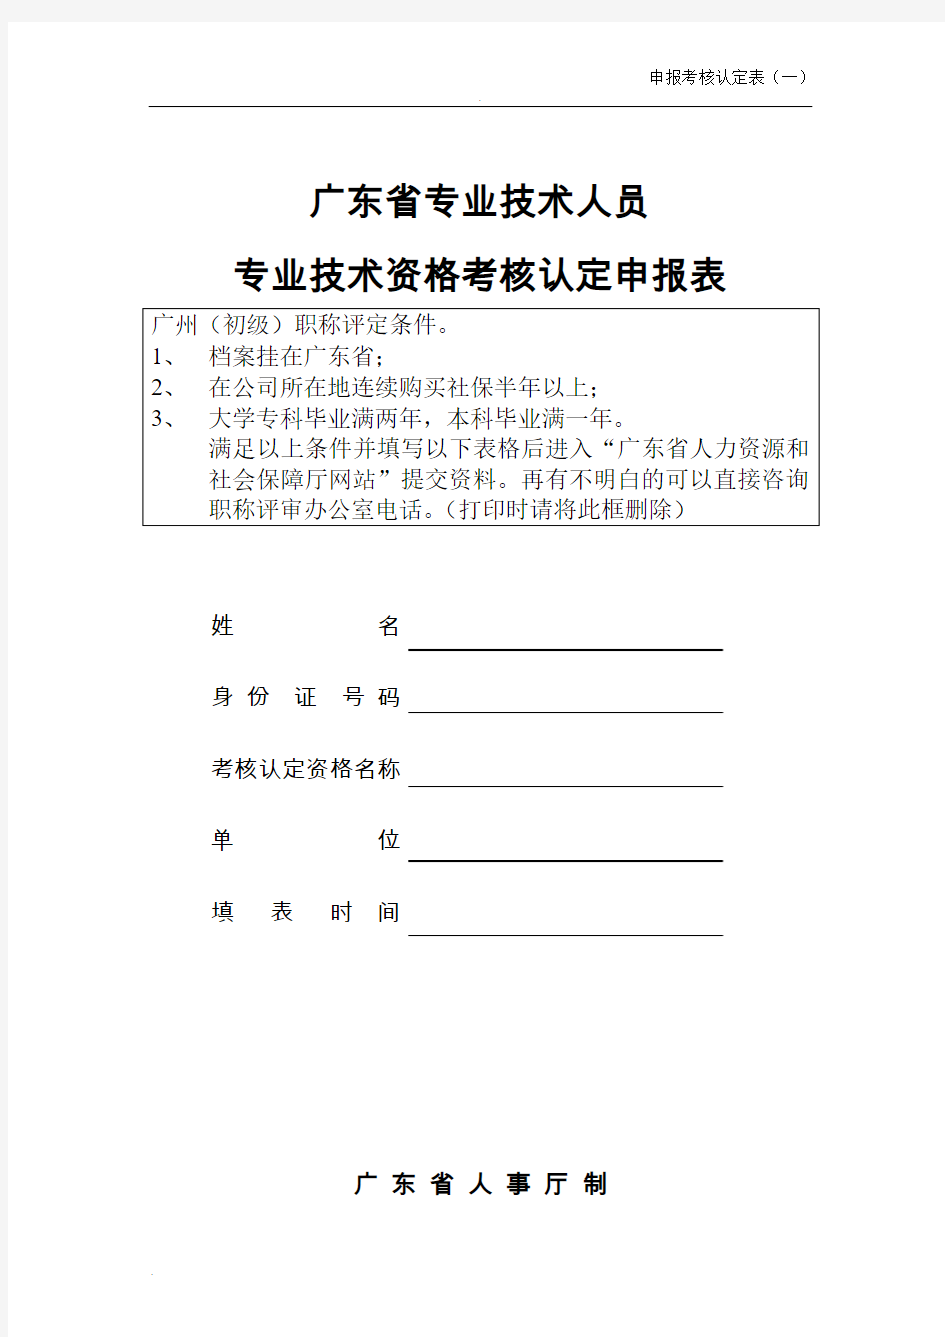 广东省初级职称评定条件及相关表格(全套)